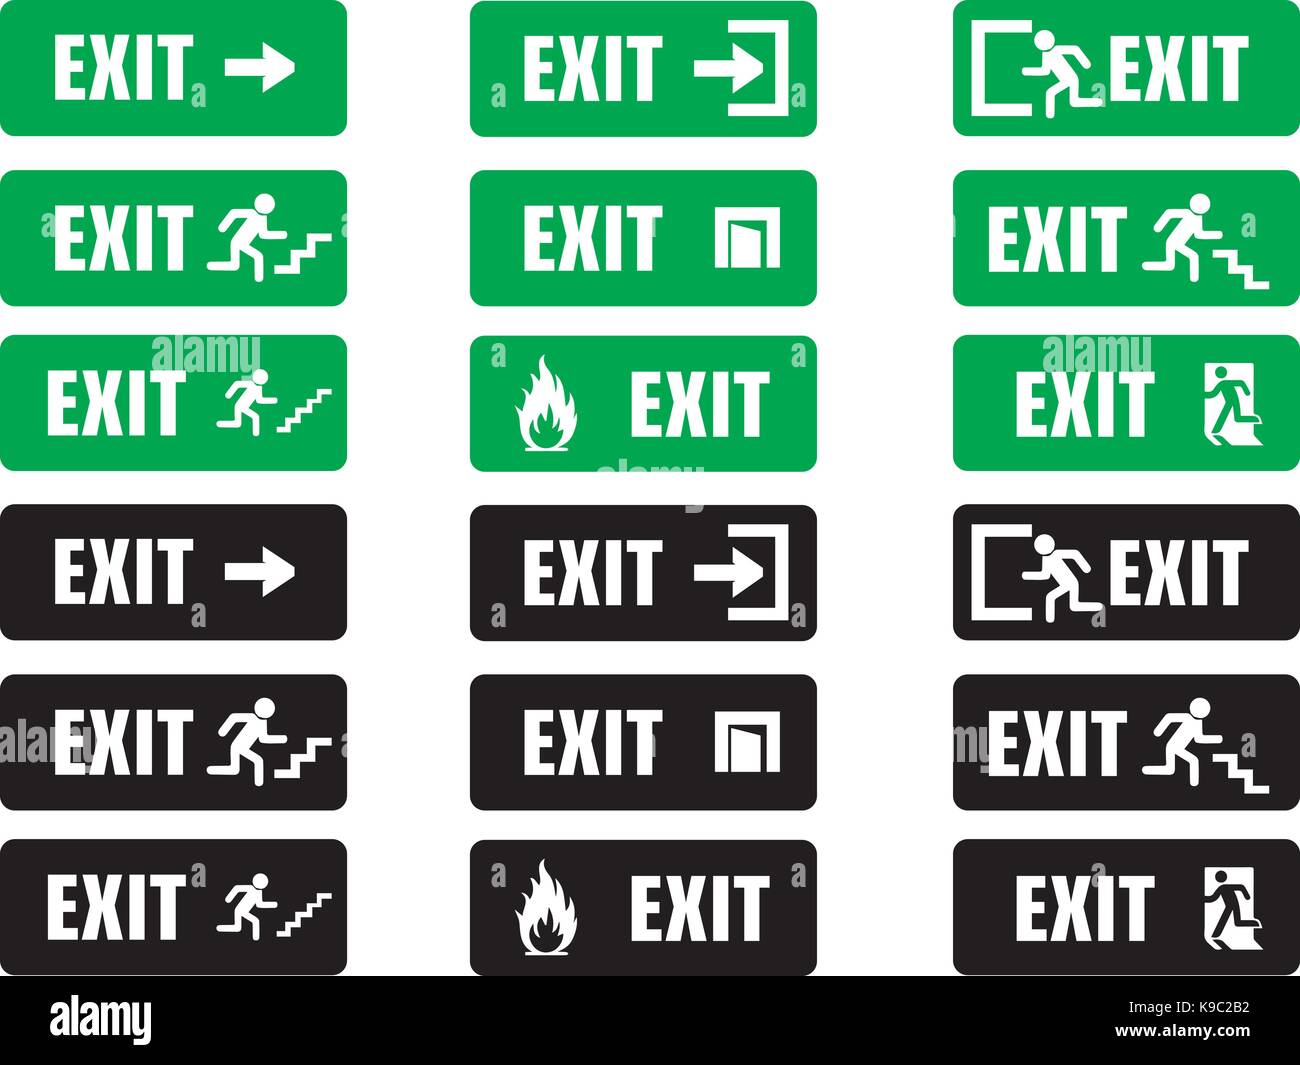 Exit escape informative signs Stock Vector